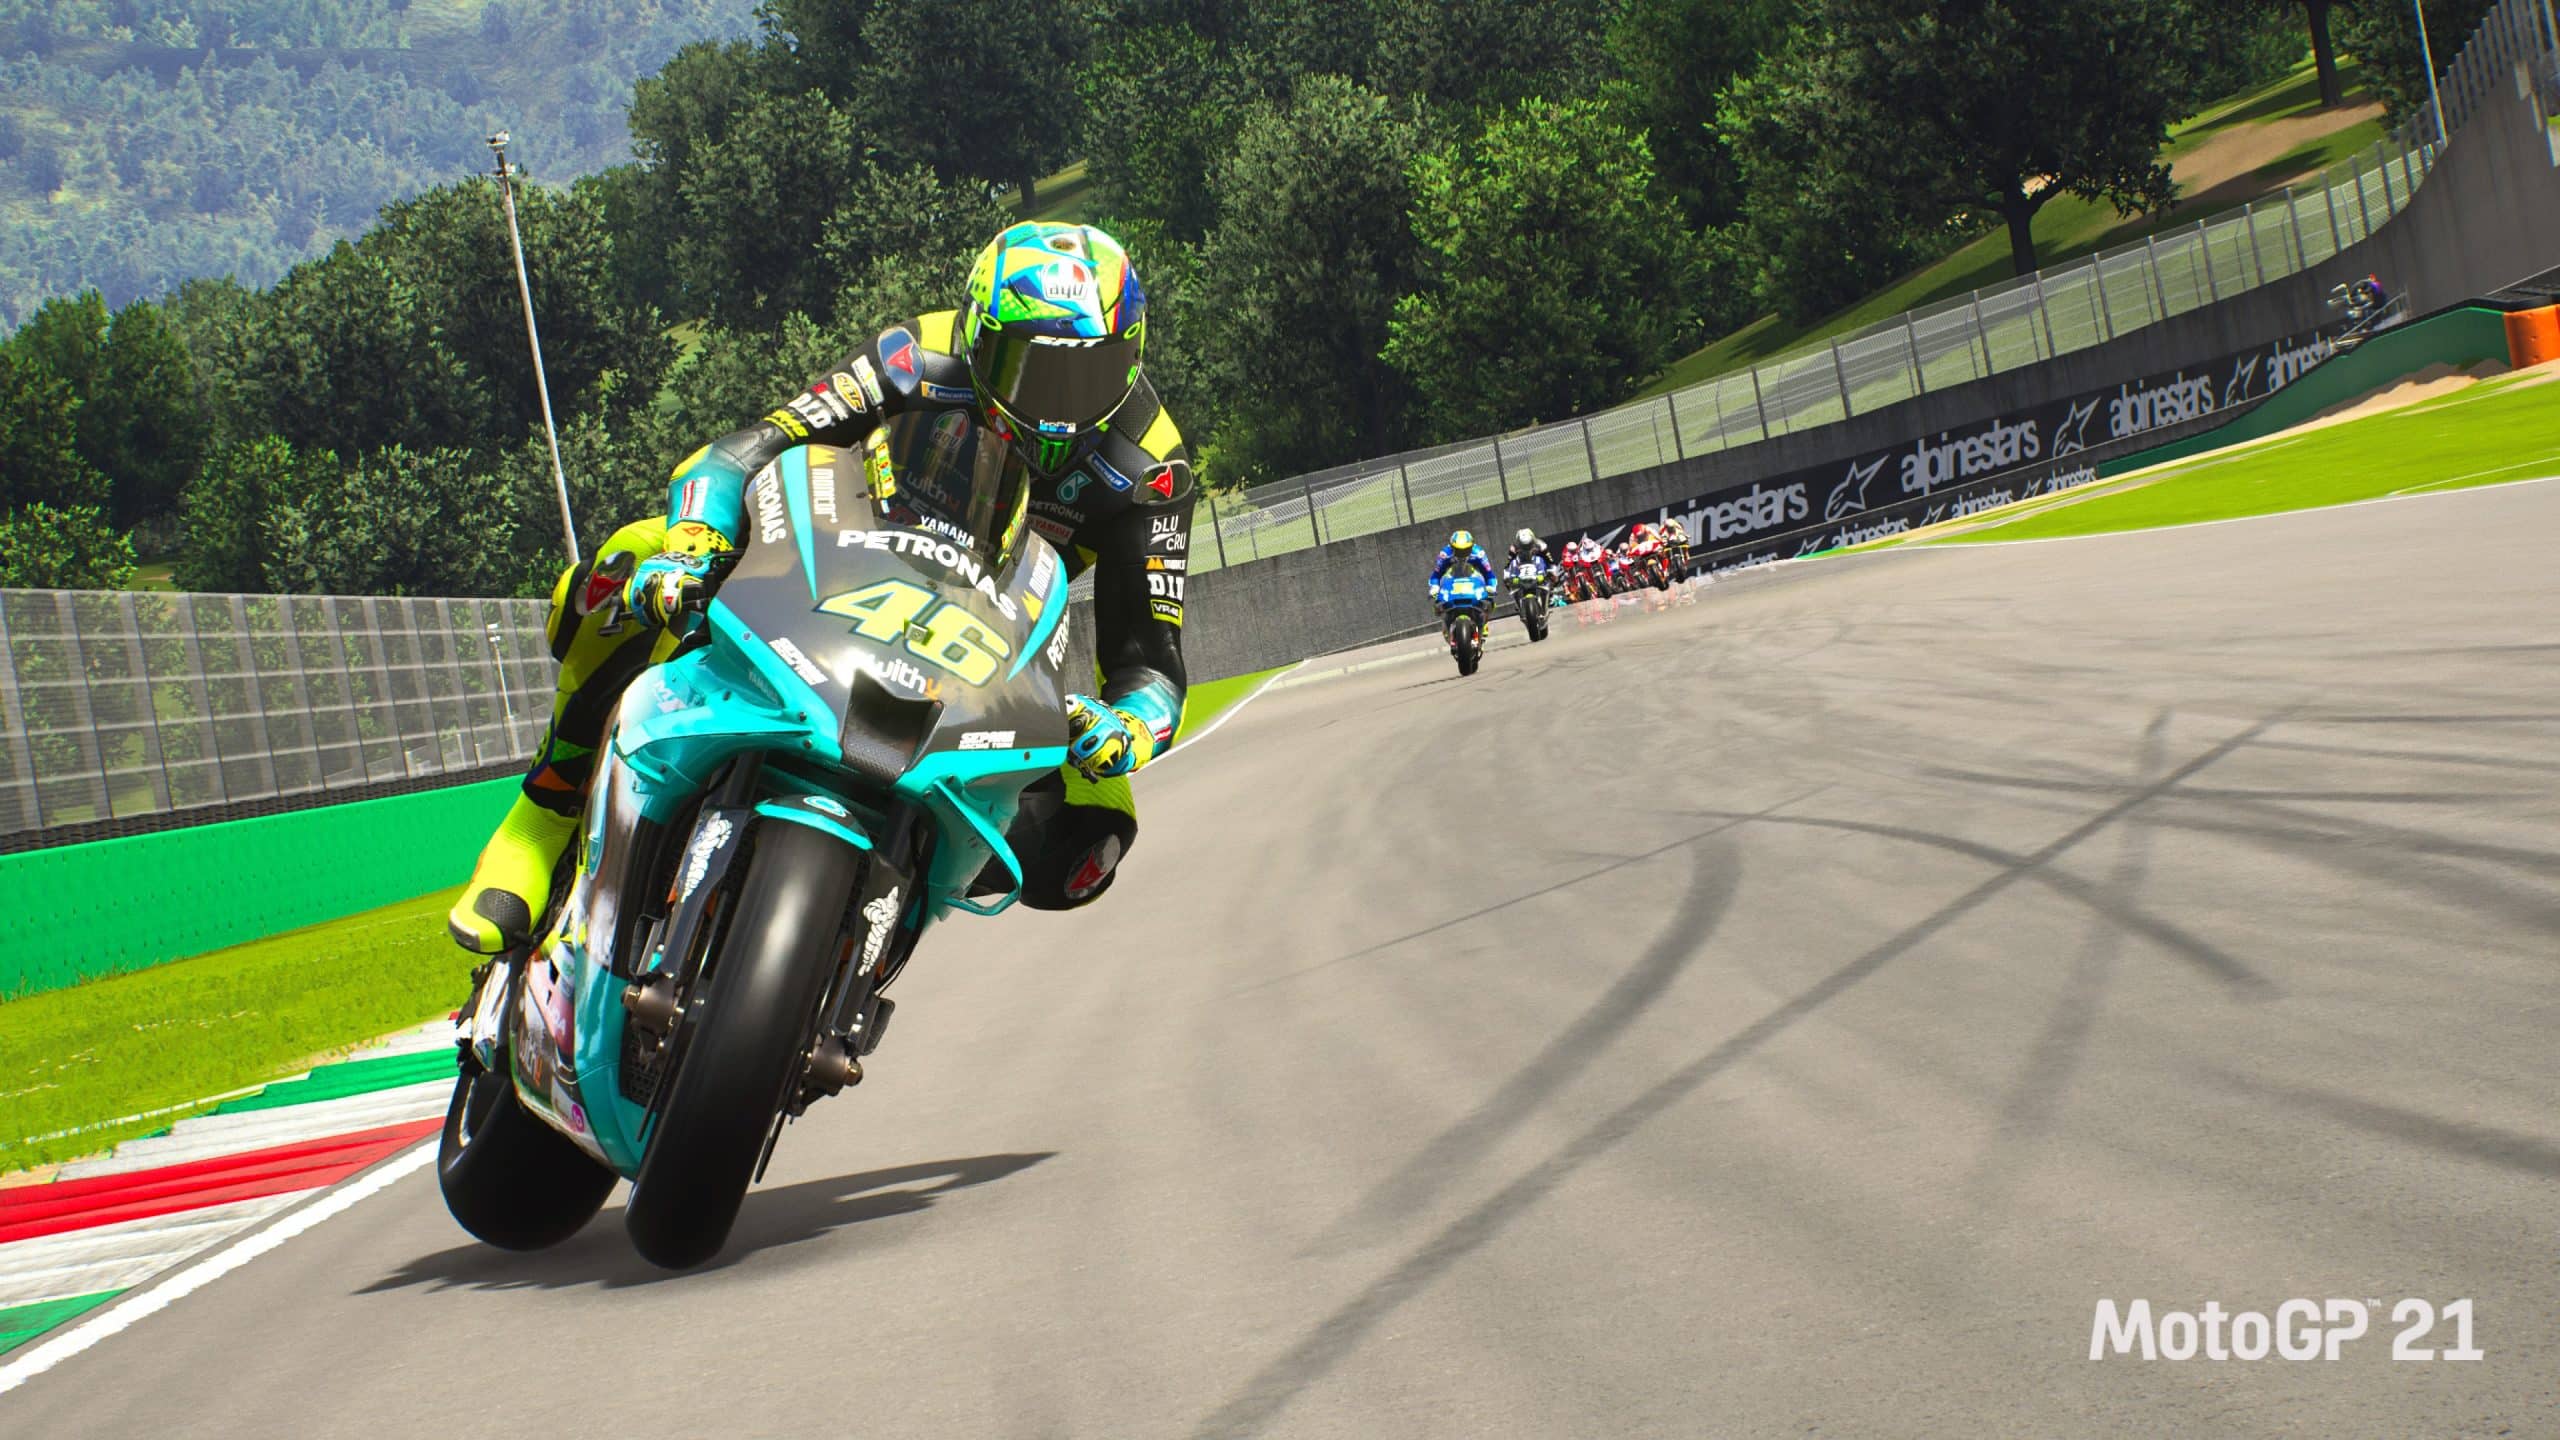 MotoGP 21 update 1.18